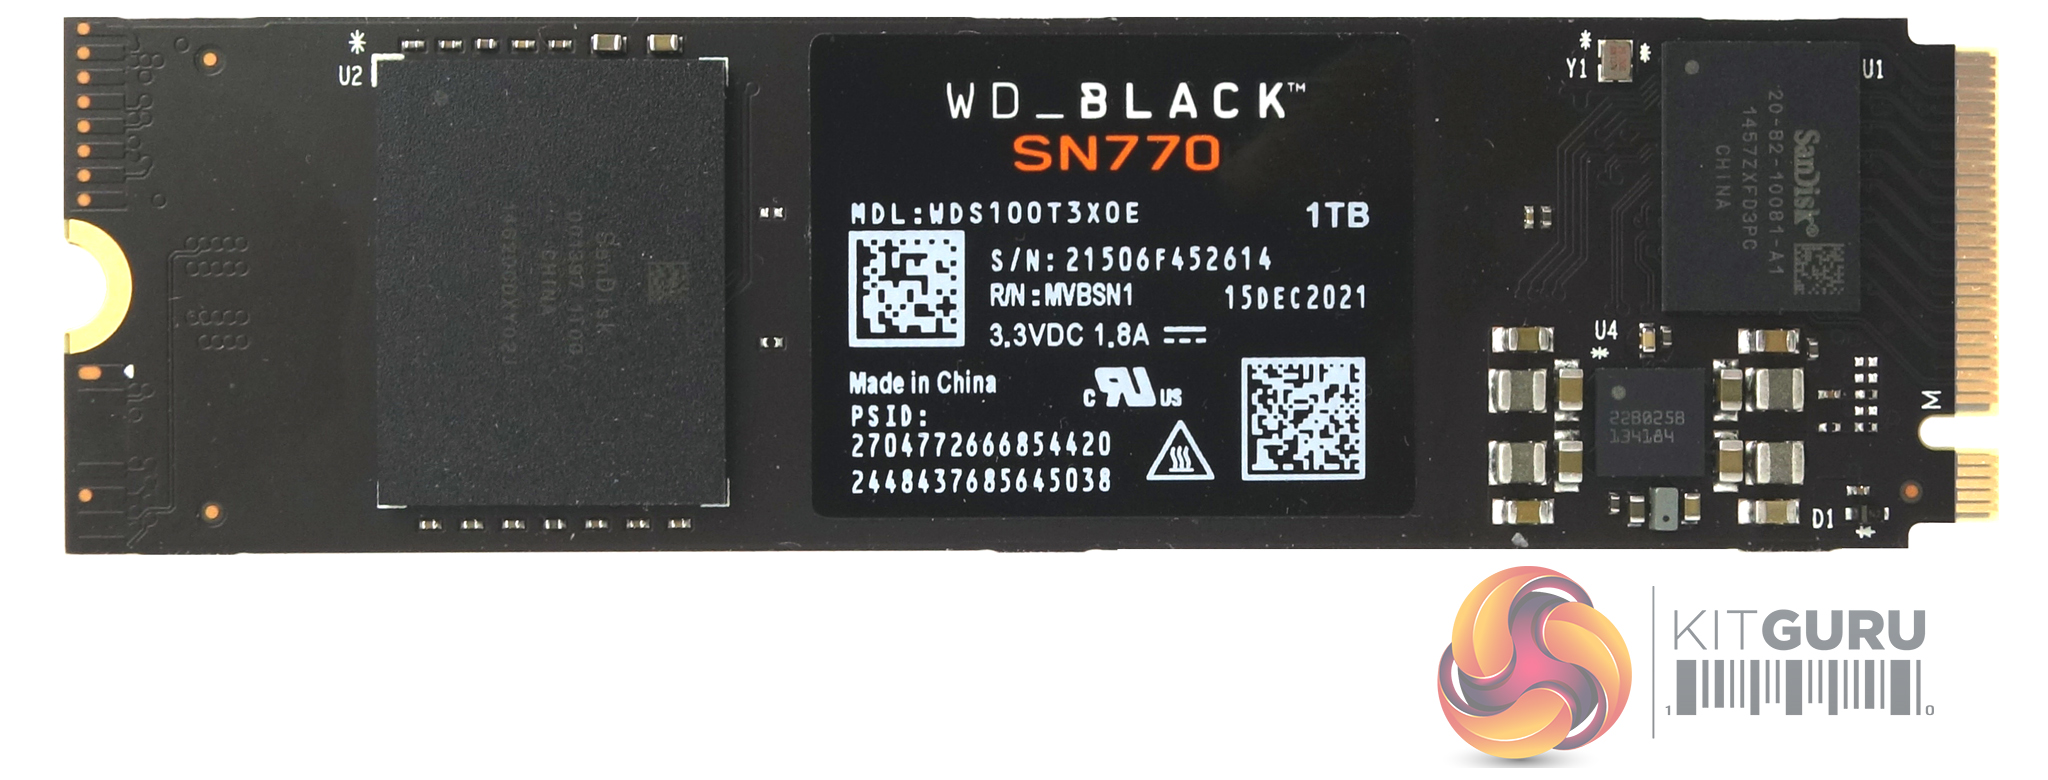 Black 1TB SN770 Review WD SSD 2 Part KitGuru- |